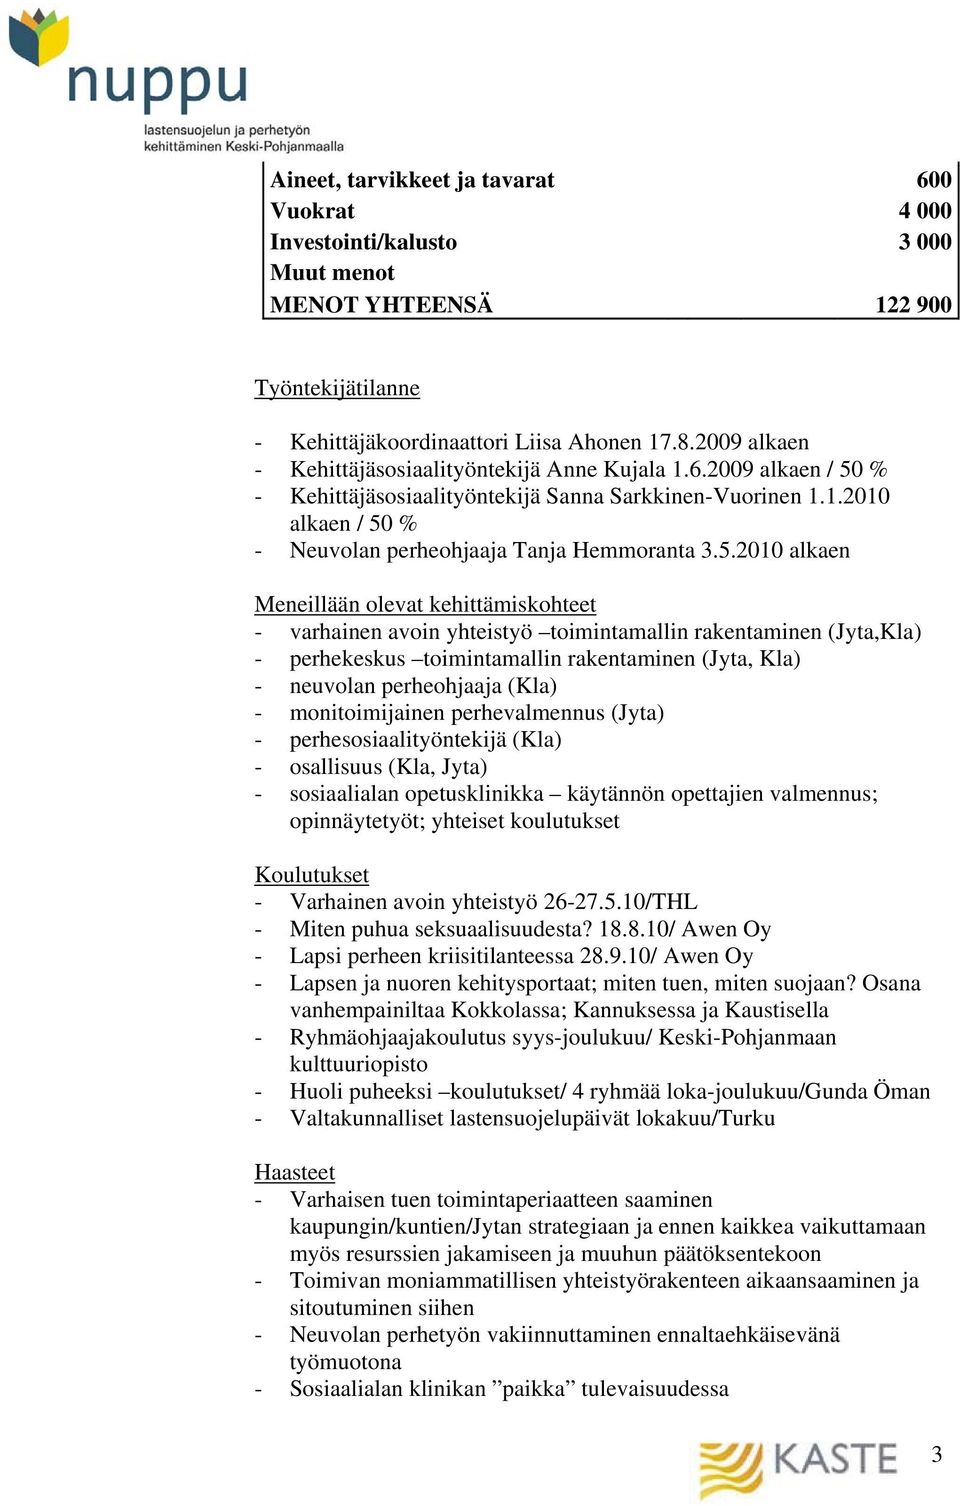 % - Kehittäjäsosiaalityöntekijä Sanna Sarkkinen-Vuorinen 1.1.2010 alkaen / 50